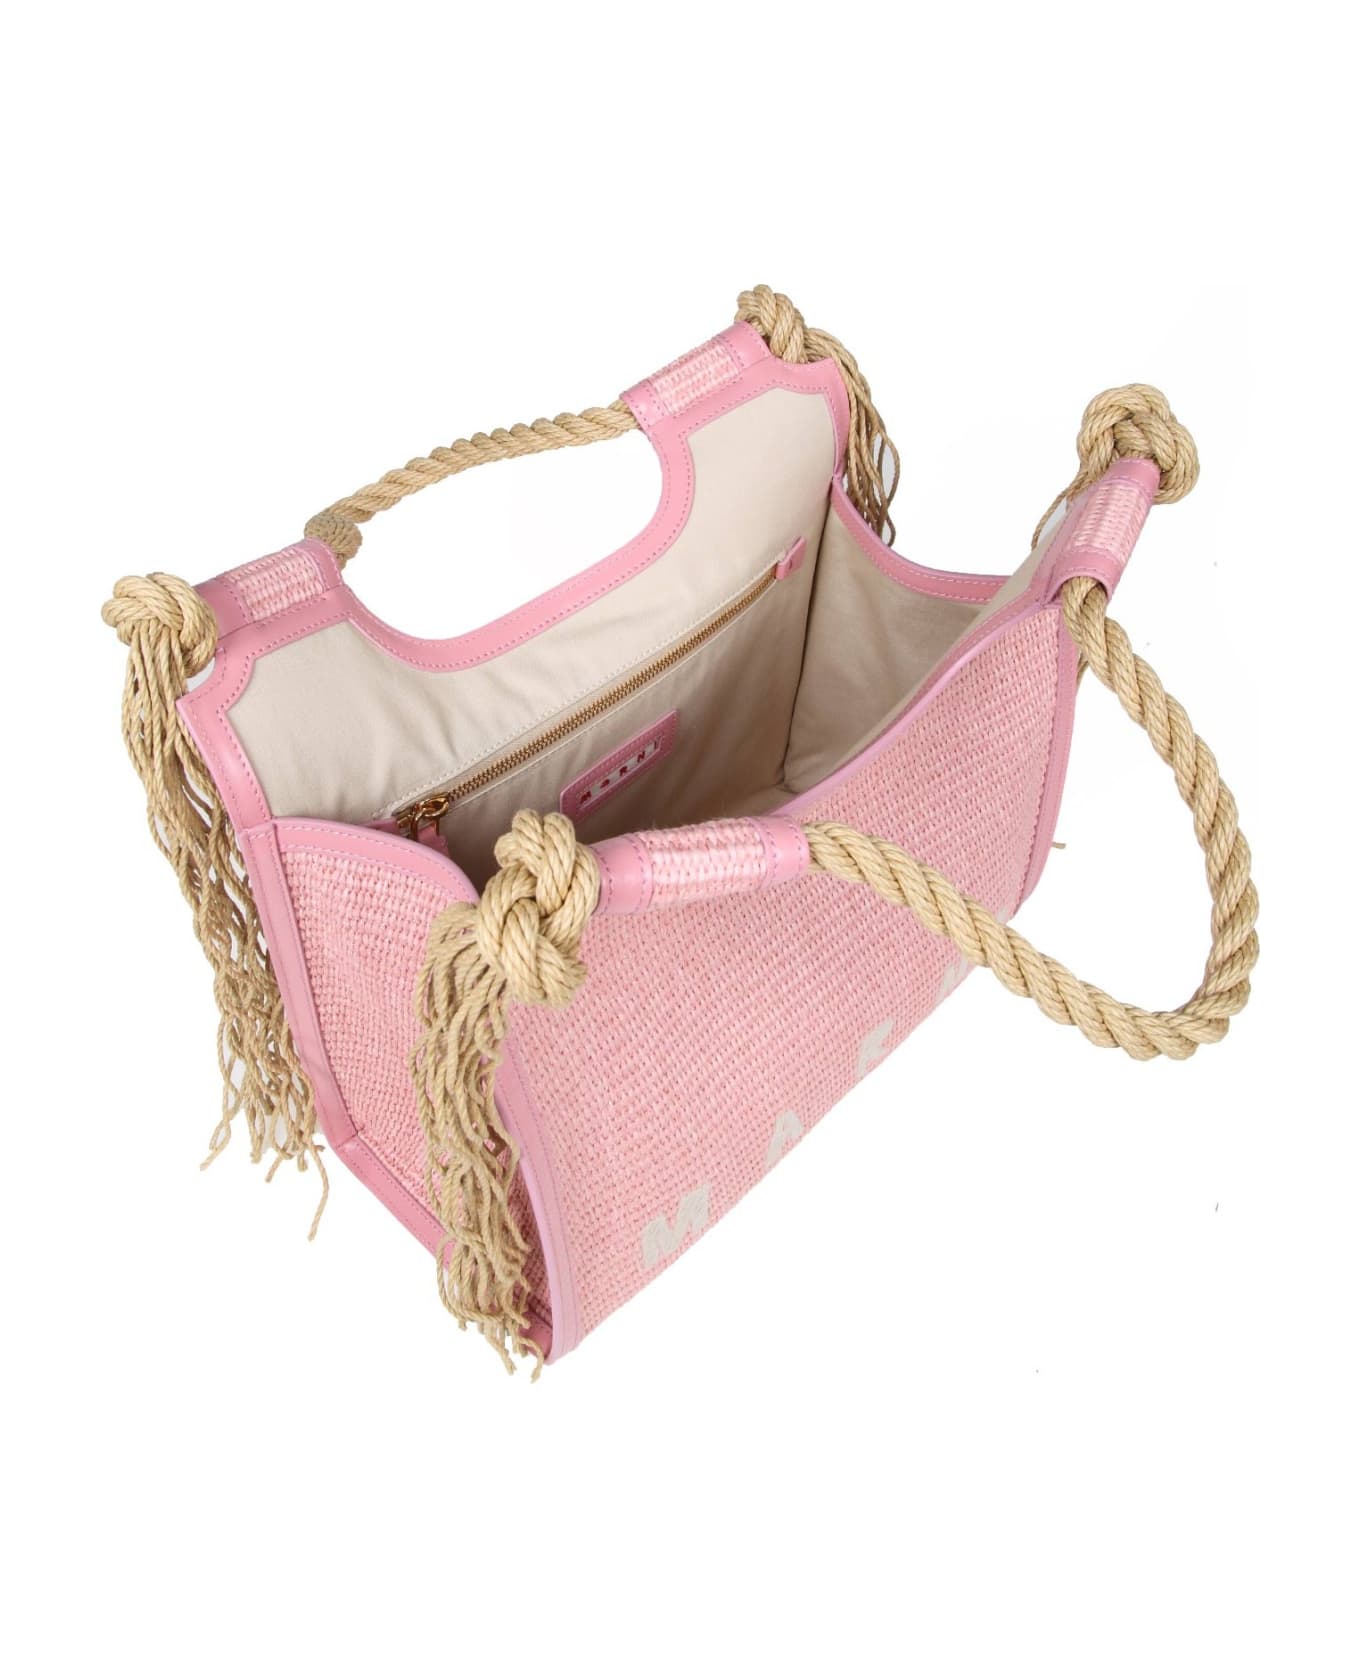 Marni Raffia Handbag Pink Color - PINK/NEUTRALS